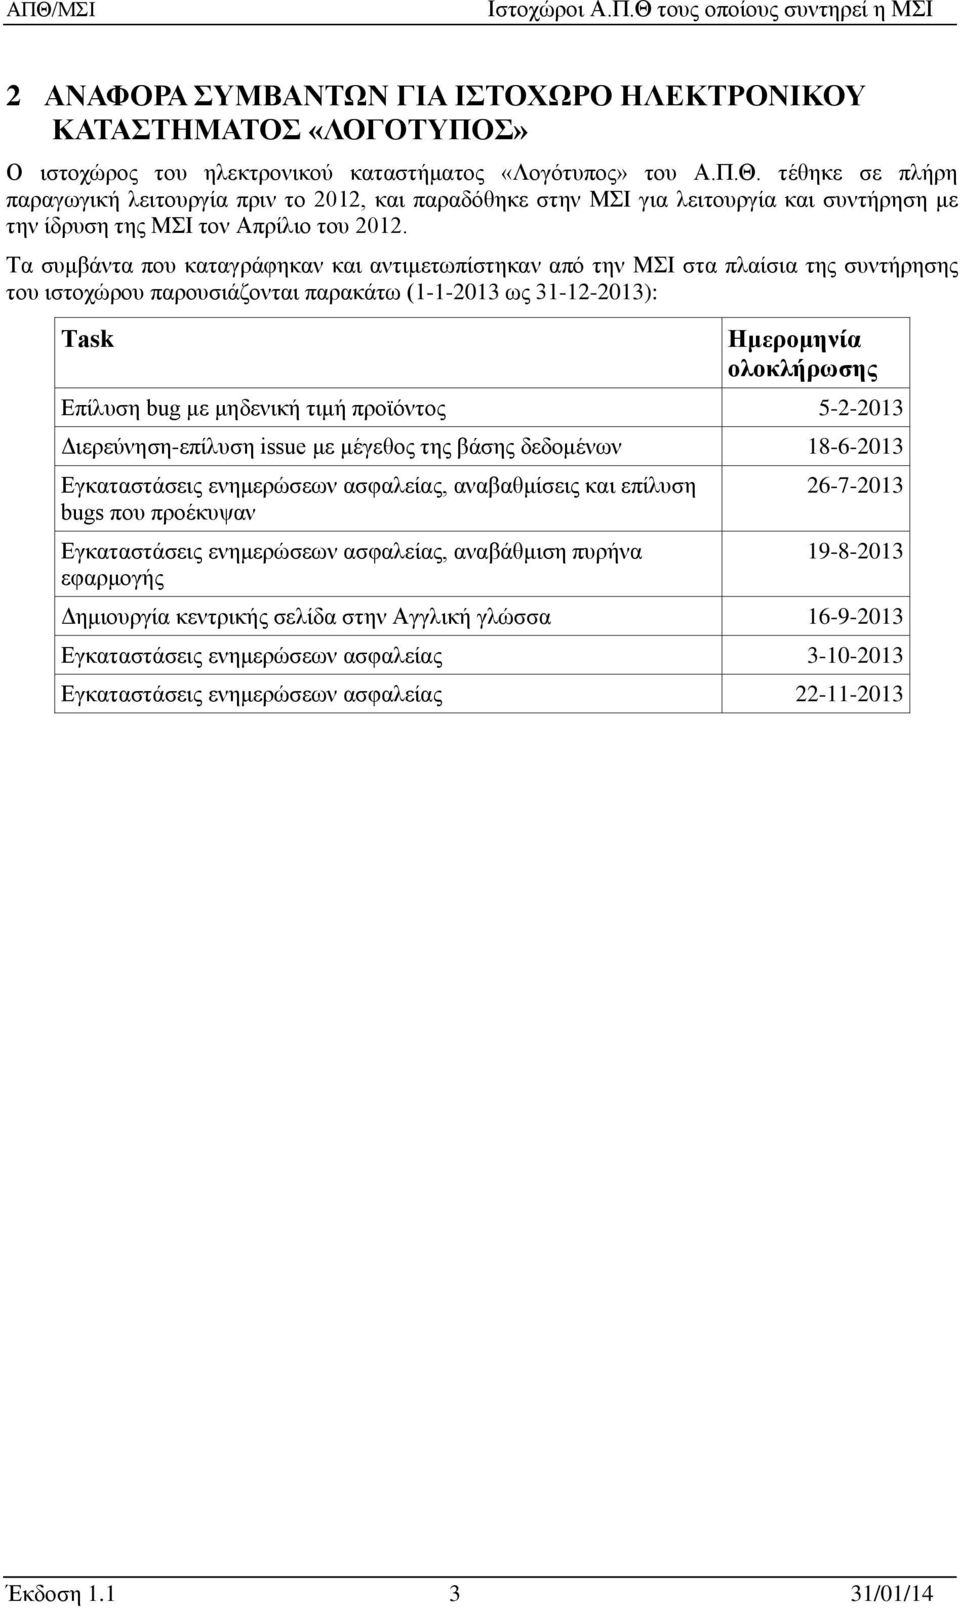 Τα συμβάντα που καταγράφηκαν και αντιμετωπίστηκαν από την ΜΣΙ στα πλαίσια της συντήρησης του ιστοχώρου παρουσιάζονται παρακάτω (1-1-2013 ως 31-12-2013): Τask Ημερομηνία ολοκλήρωσης Επίλυση bug με